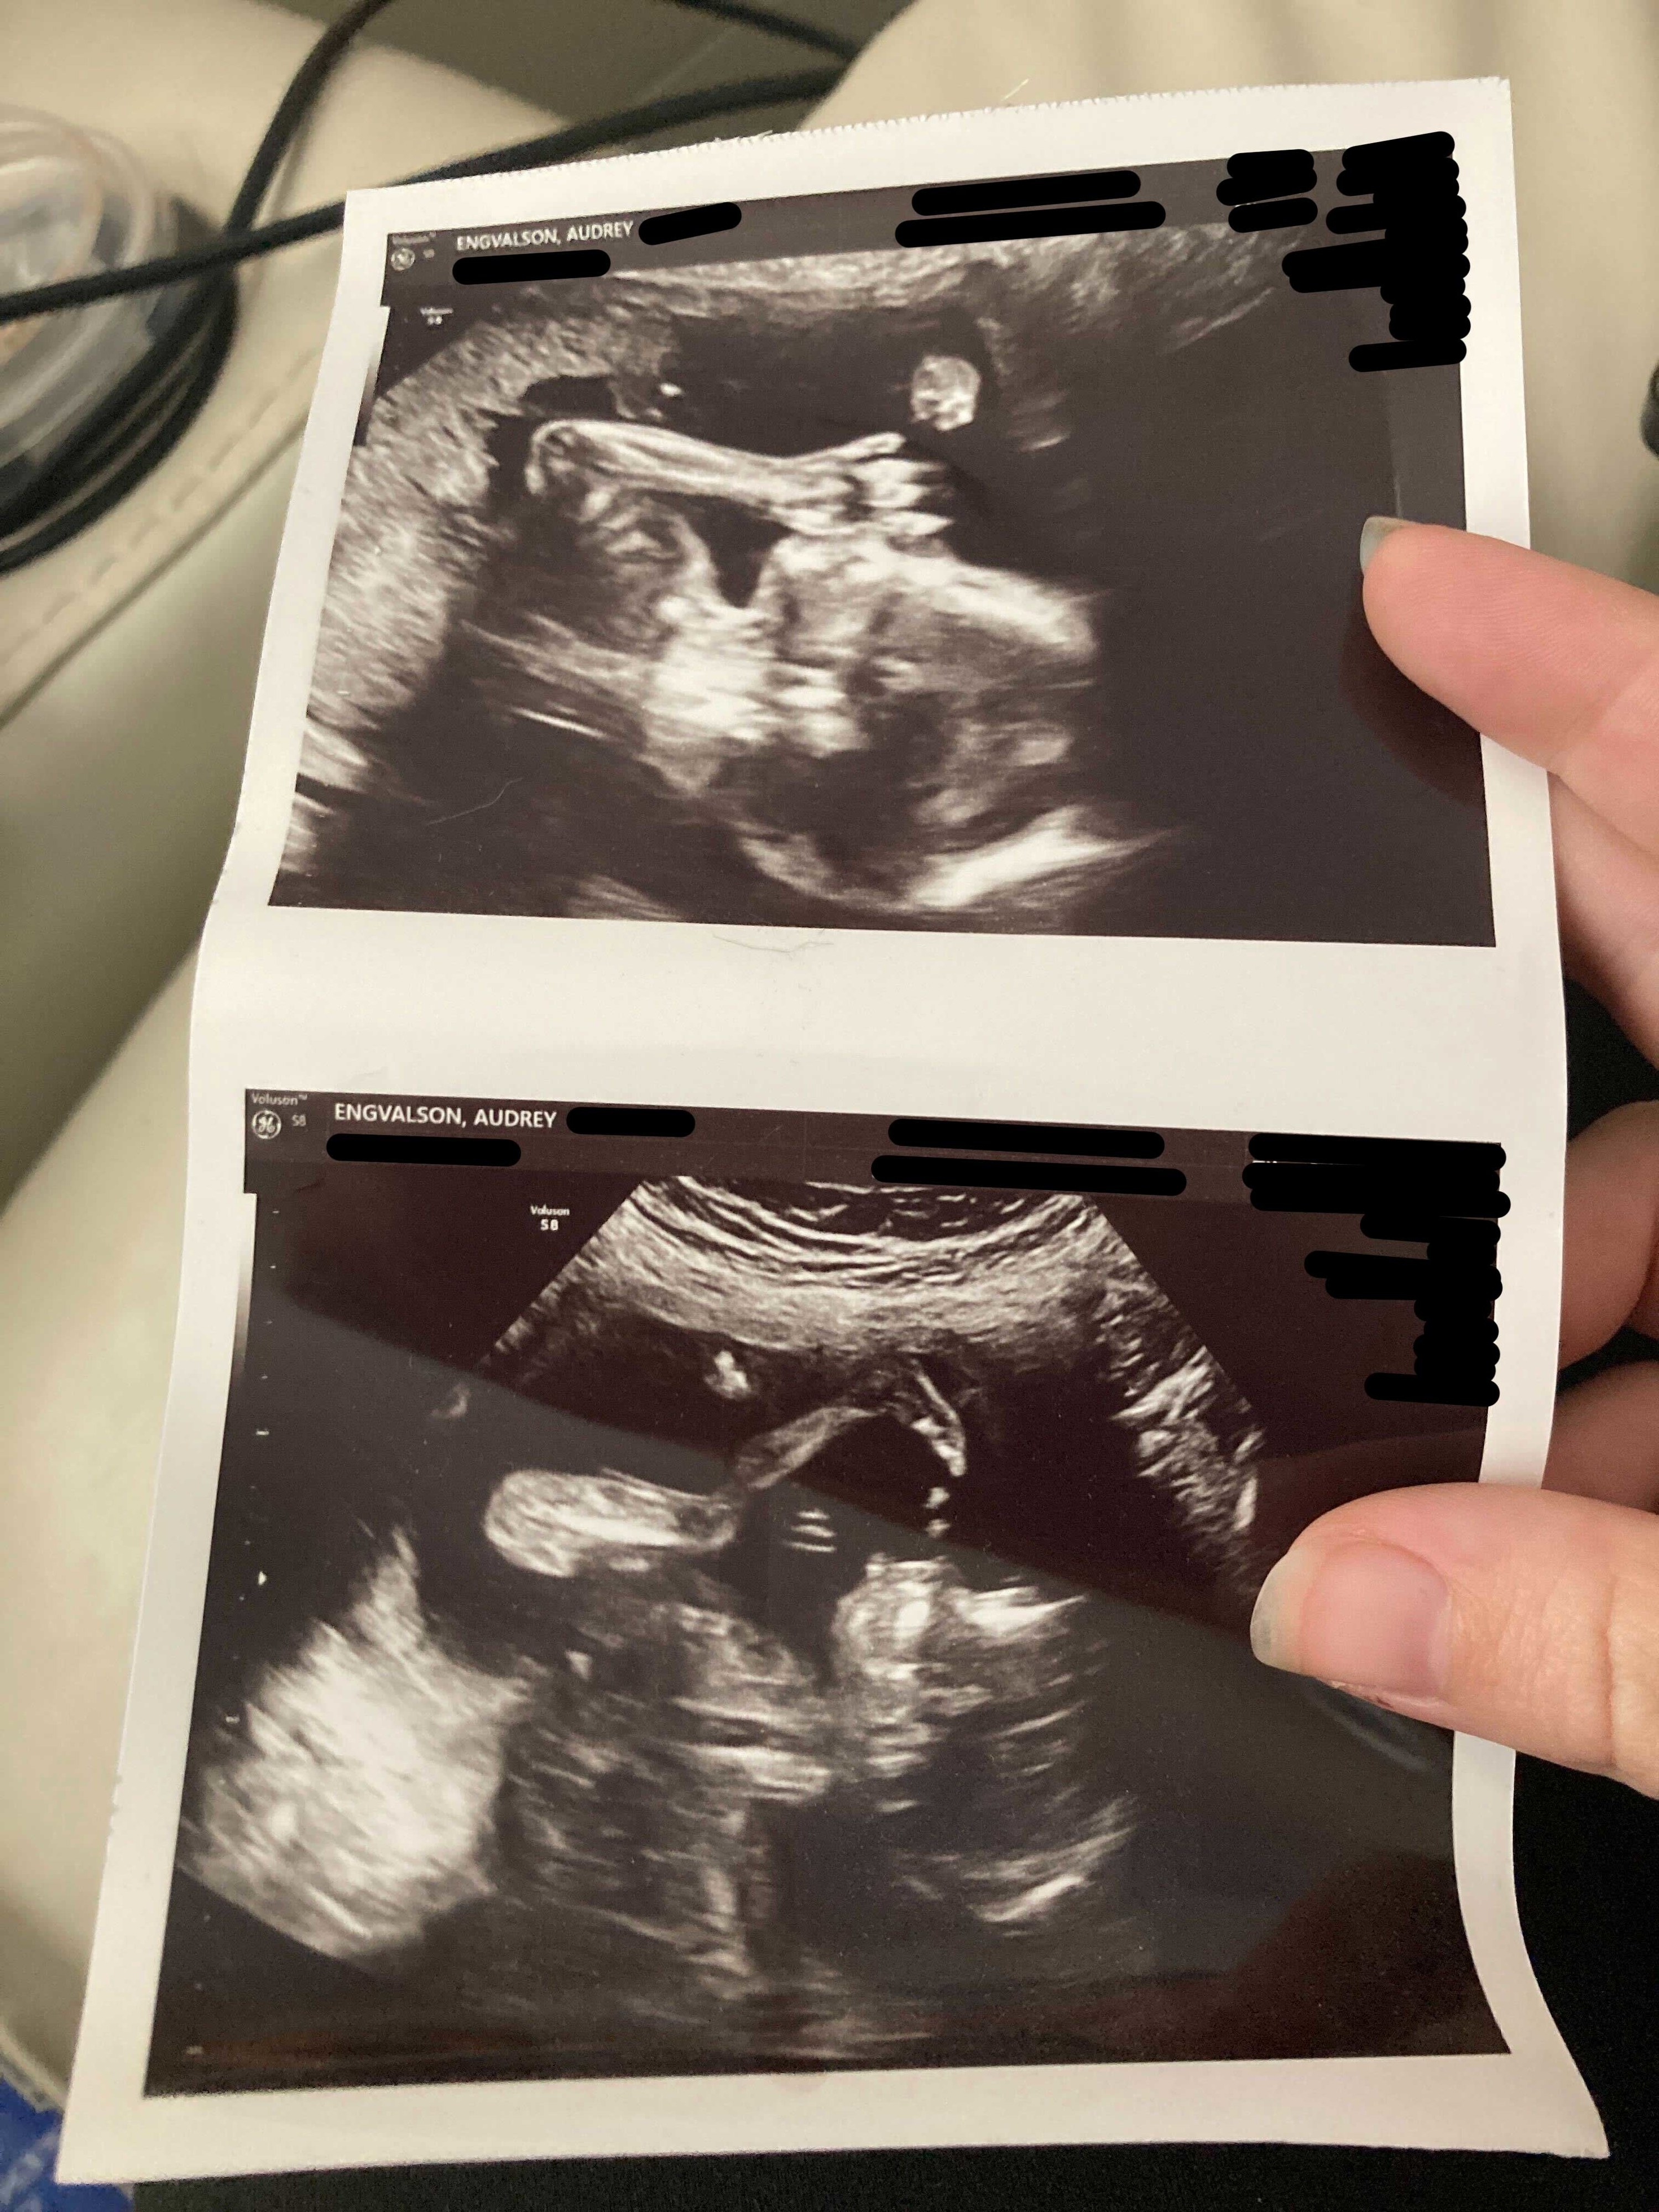 ultrasound photos